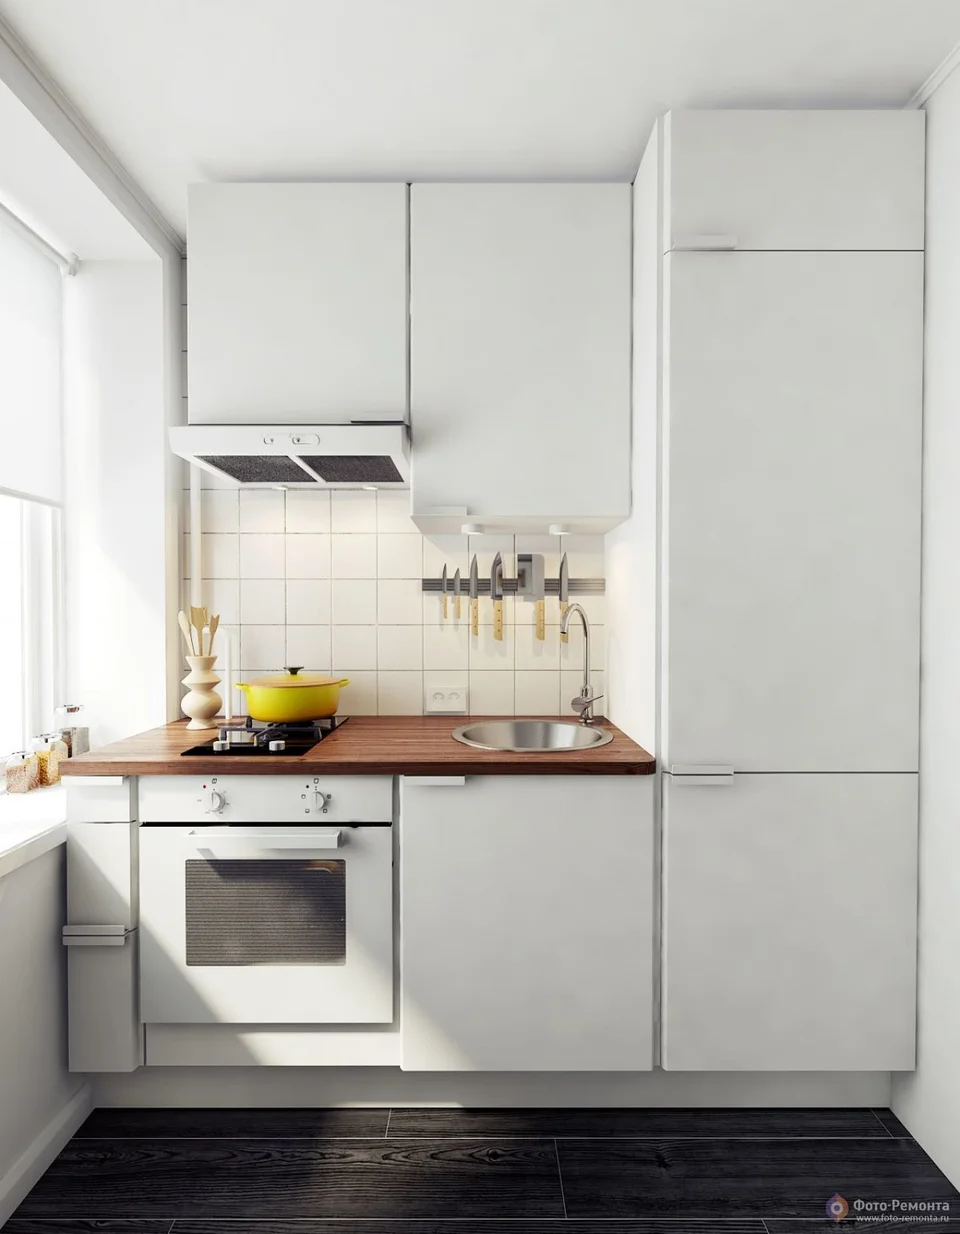 Узкая кухня в скандинавском стиле с холодильником